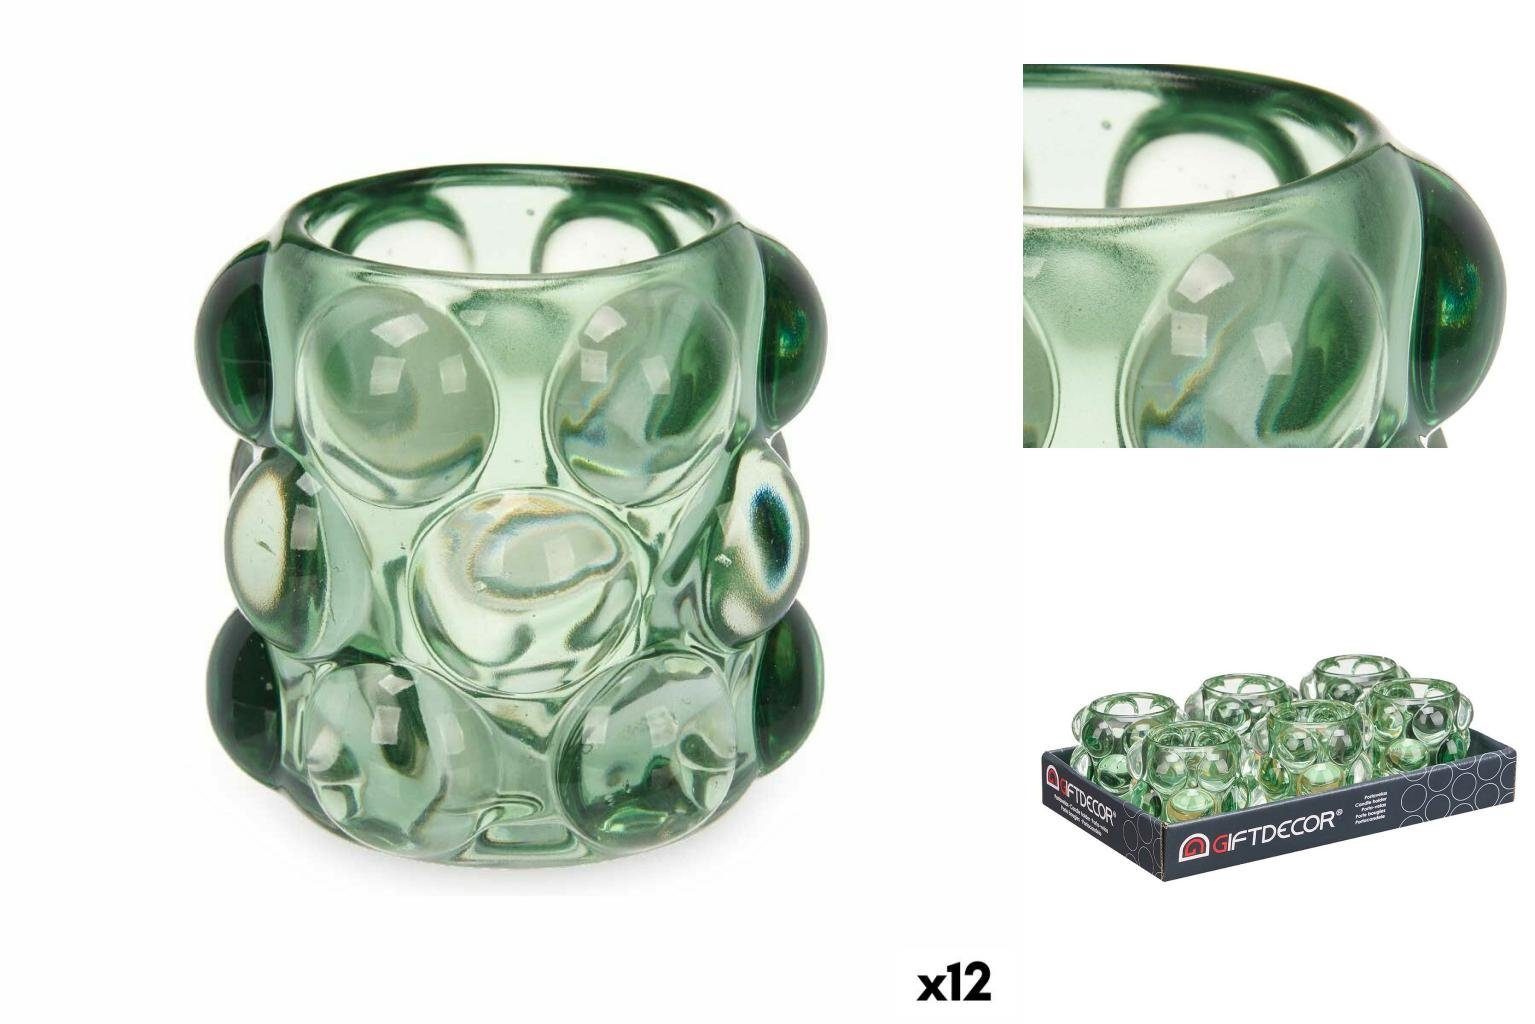 Gift Decor Windlicht Kerzenschale Mikrosphären grün Glas 8,4 x 9 x 8,4 cm 12 Stück